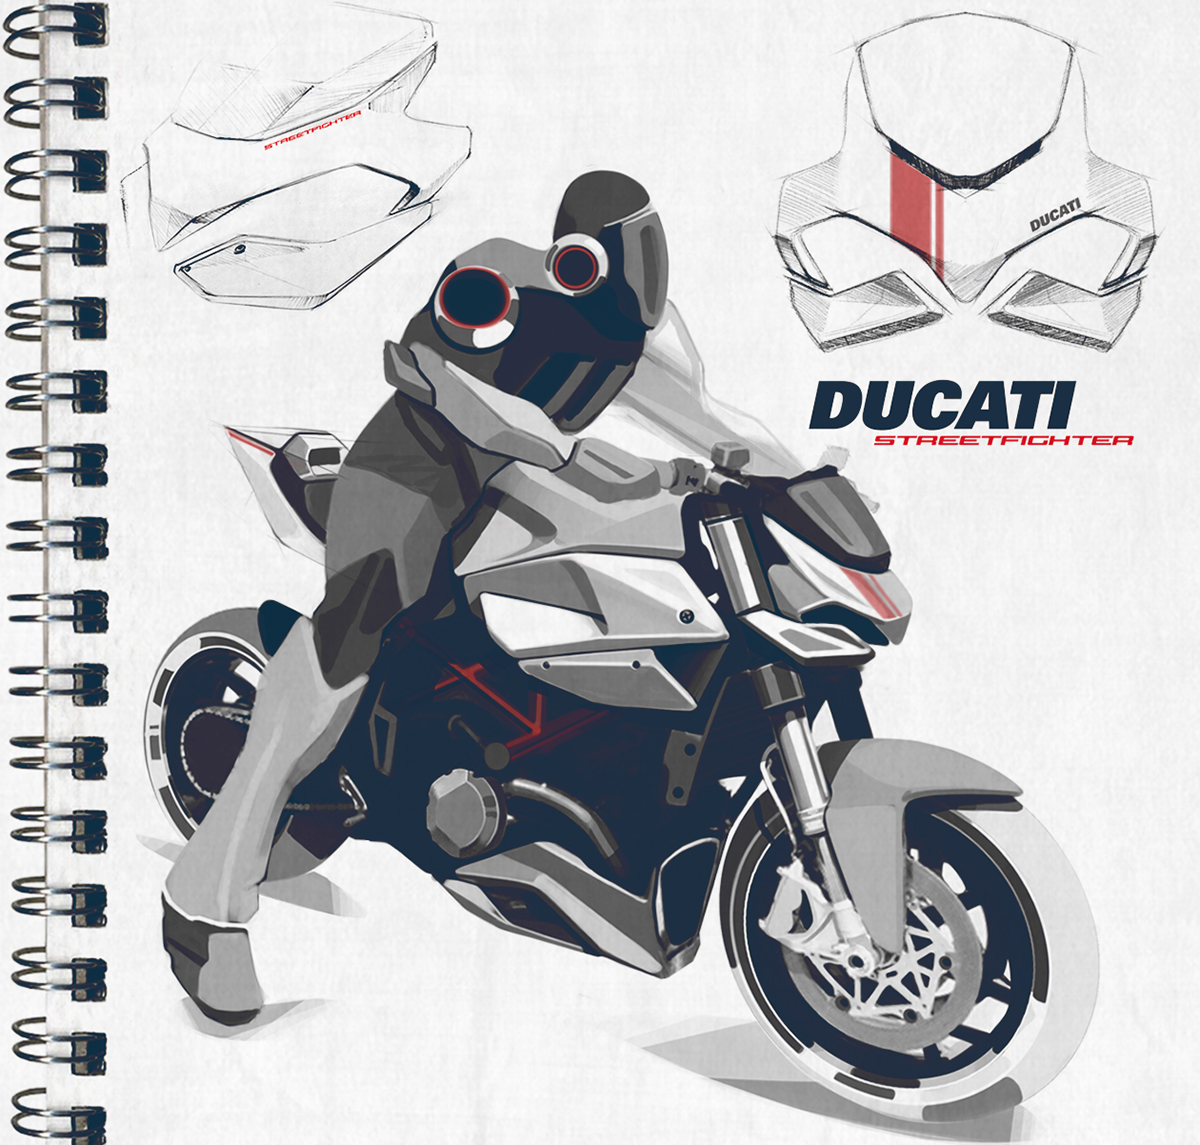 Motorcycle Design Industrial industrial design  motorcycle sketching